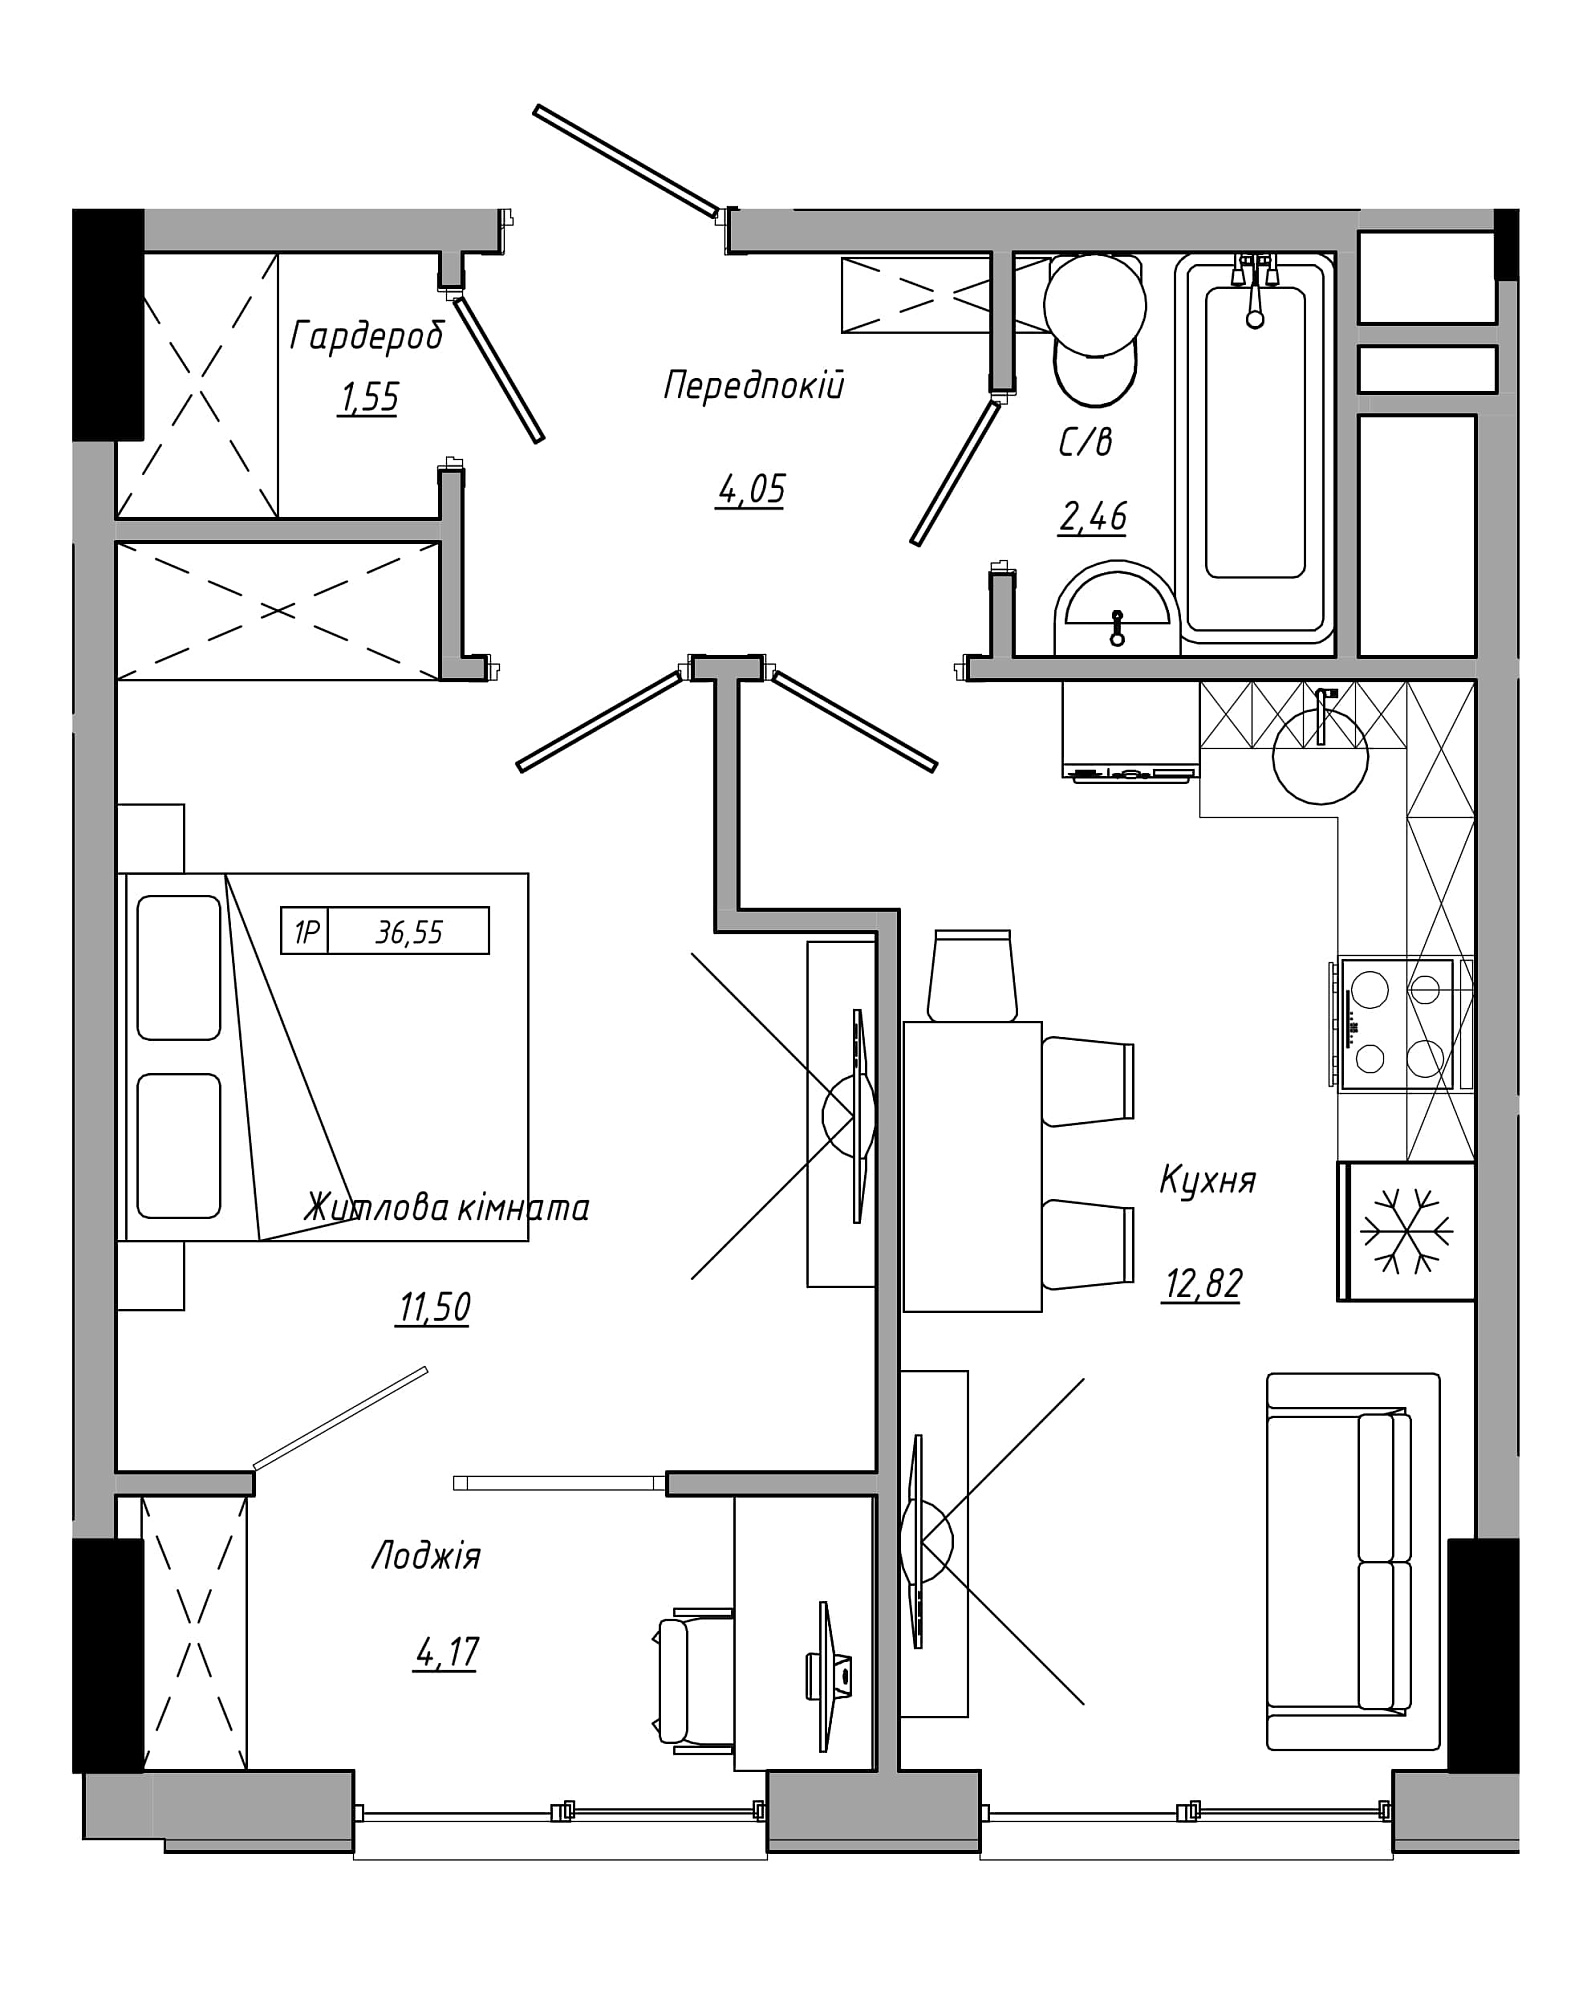 Планування 1-к квартира площею 36.55м2, AB-21-05/00020.